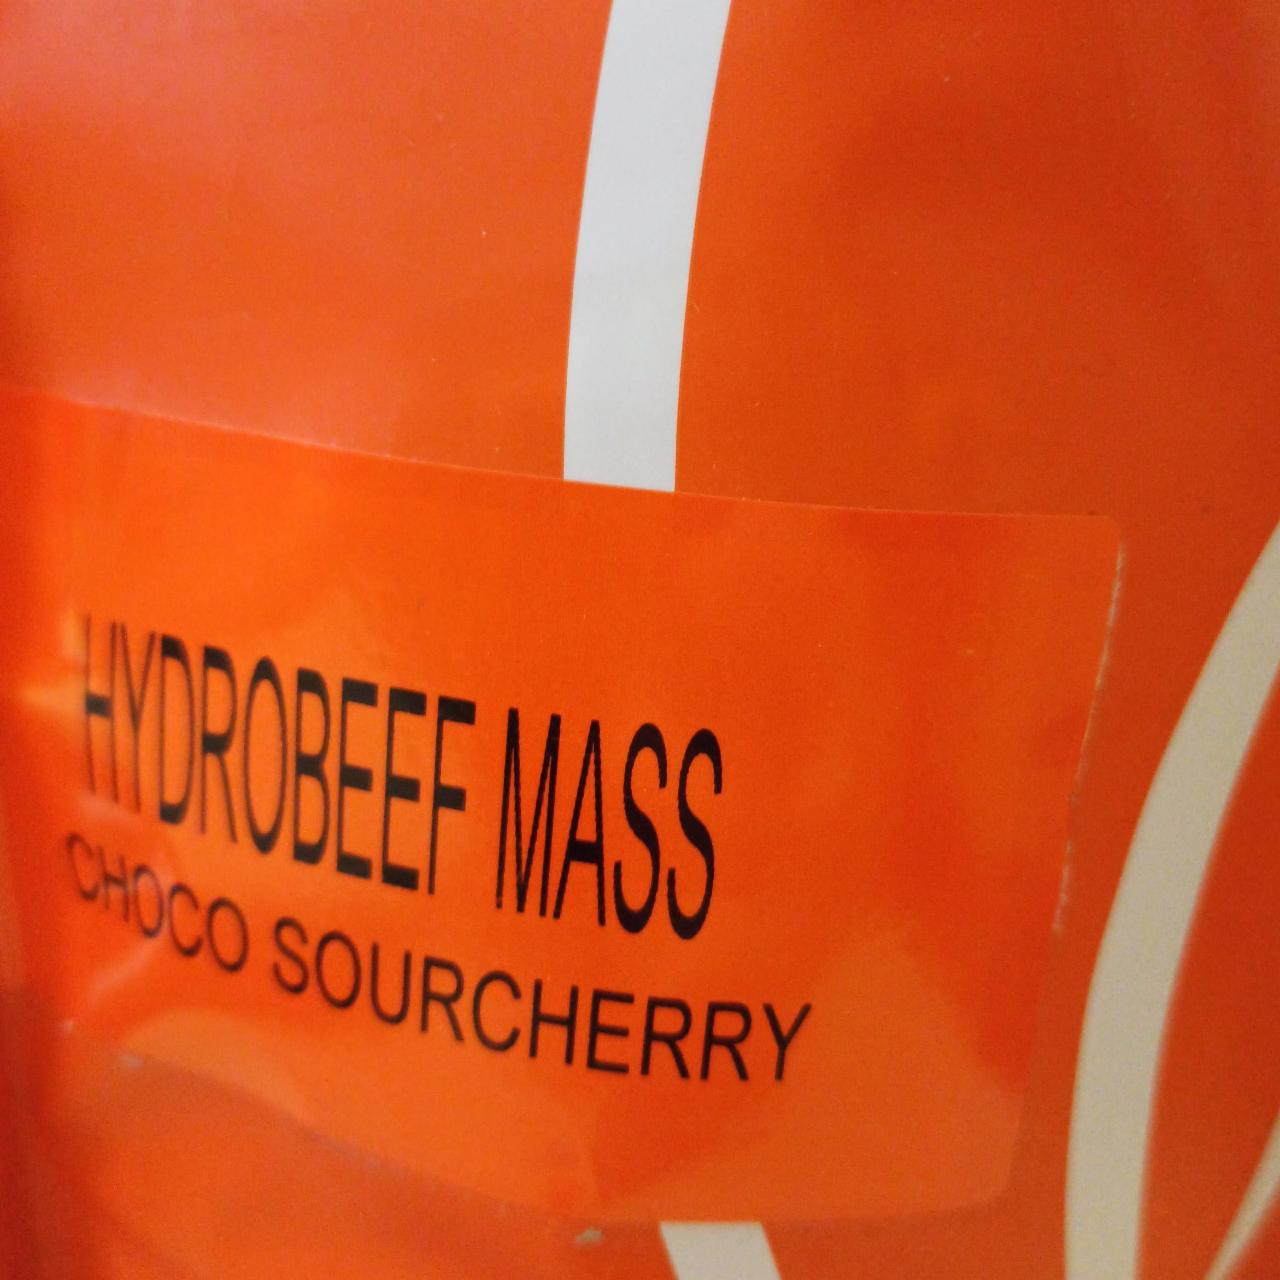 Fotografie - Hydrobeef Mass Choco Sourcherry Still Mass